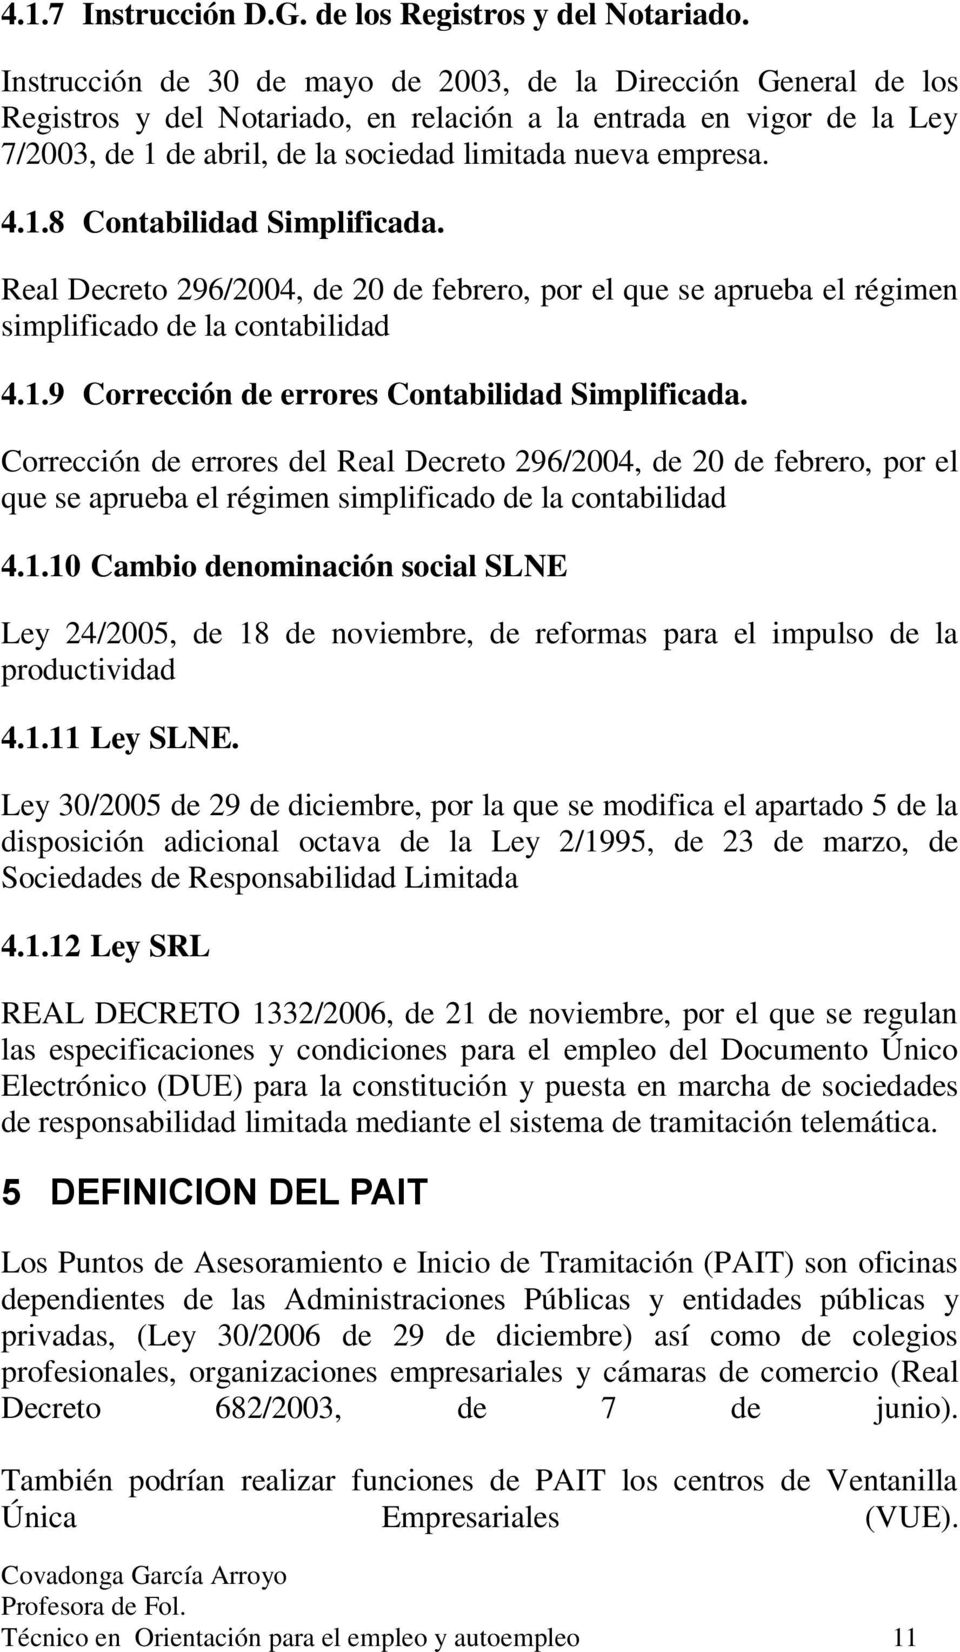 4.1.8 Contabilidad Simplificada. Real Decreto 296/2004, de 20 de febrero, por el que se aprueba el régimen simplificado de la contabilidad 4.1.9 Corrección de errores Contabilidad Simplificada.